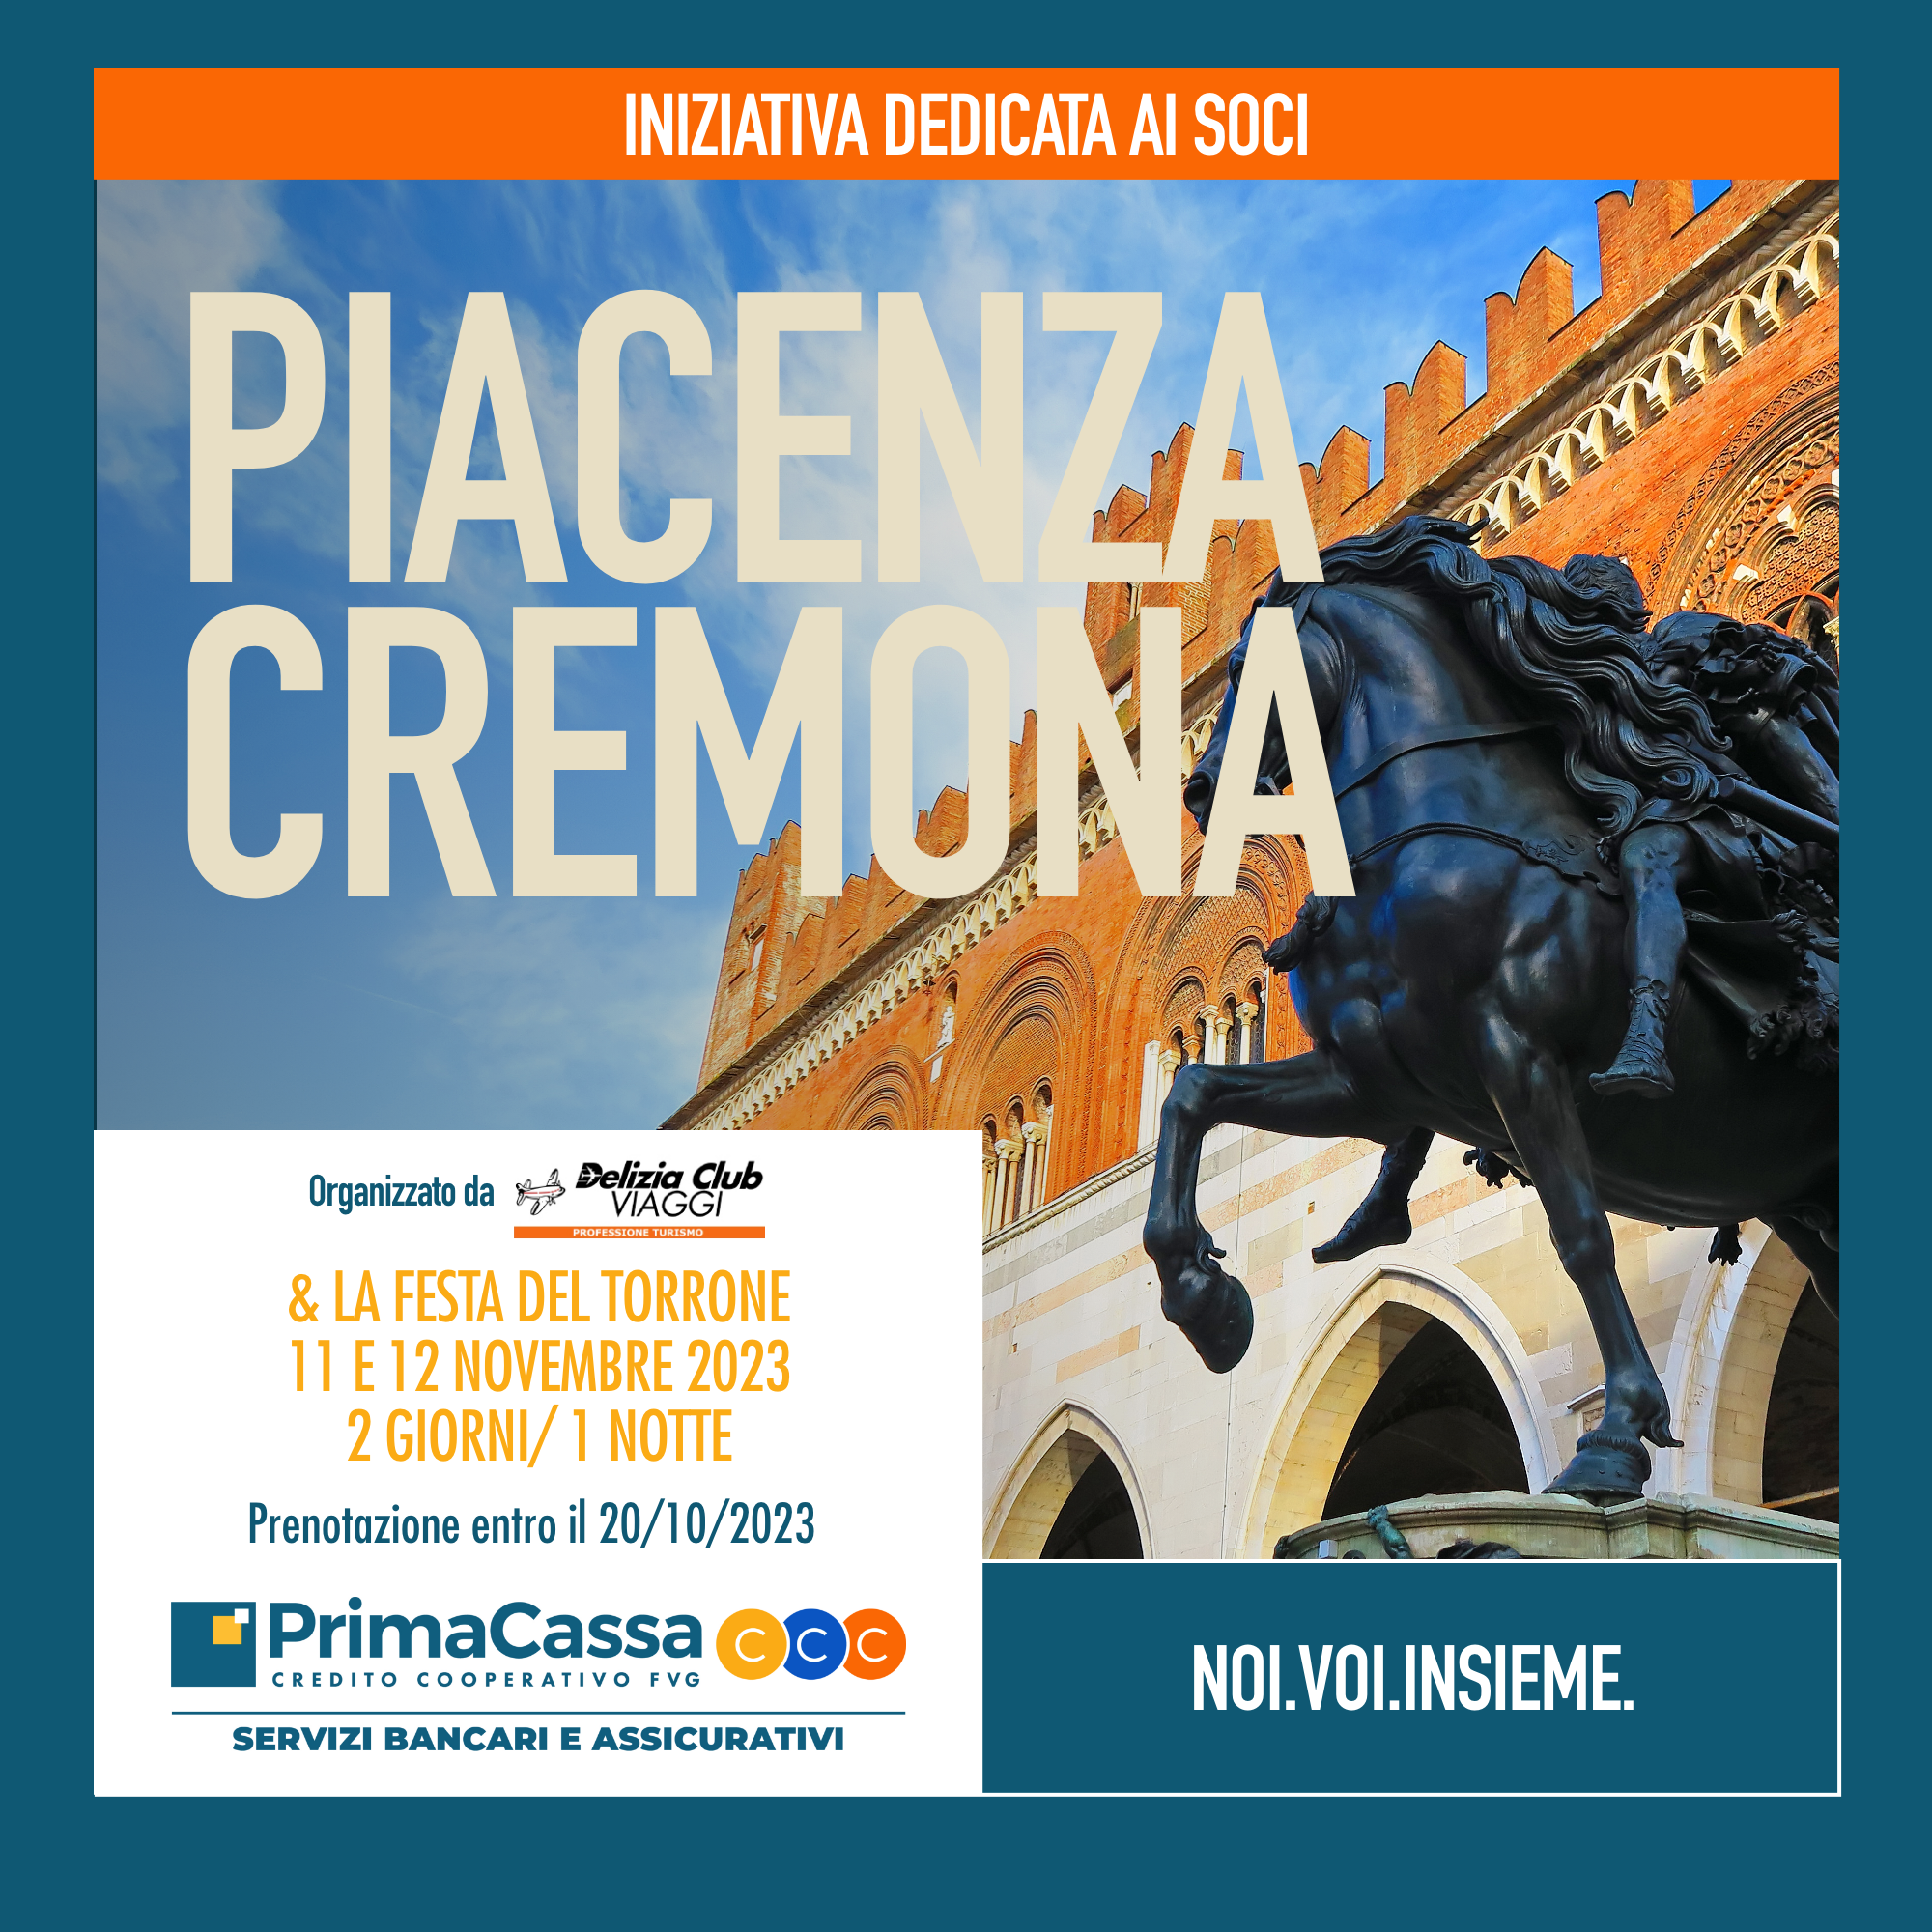 Gite Sociali - Piacenza, Cremona & la festa del torrone